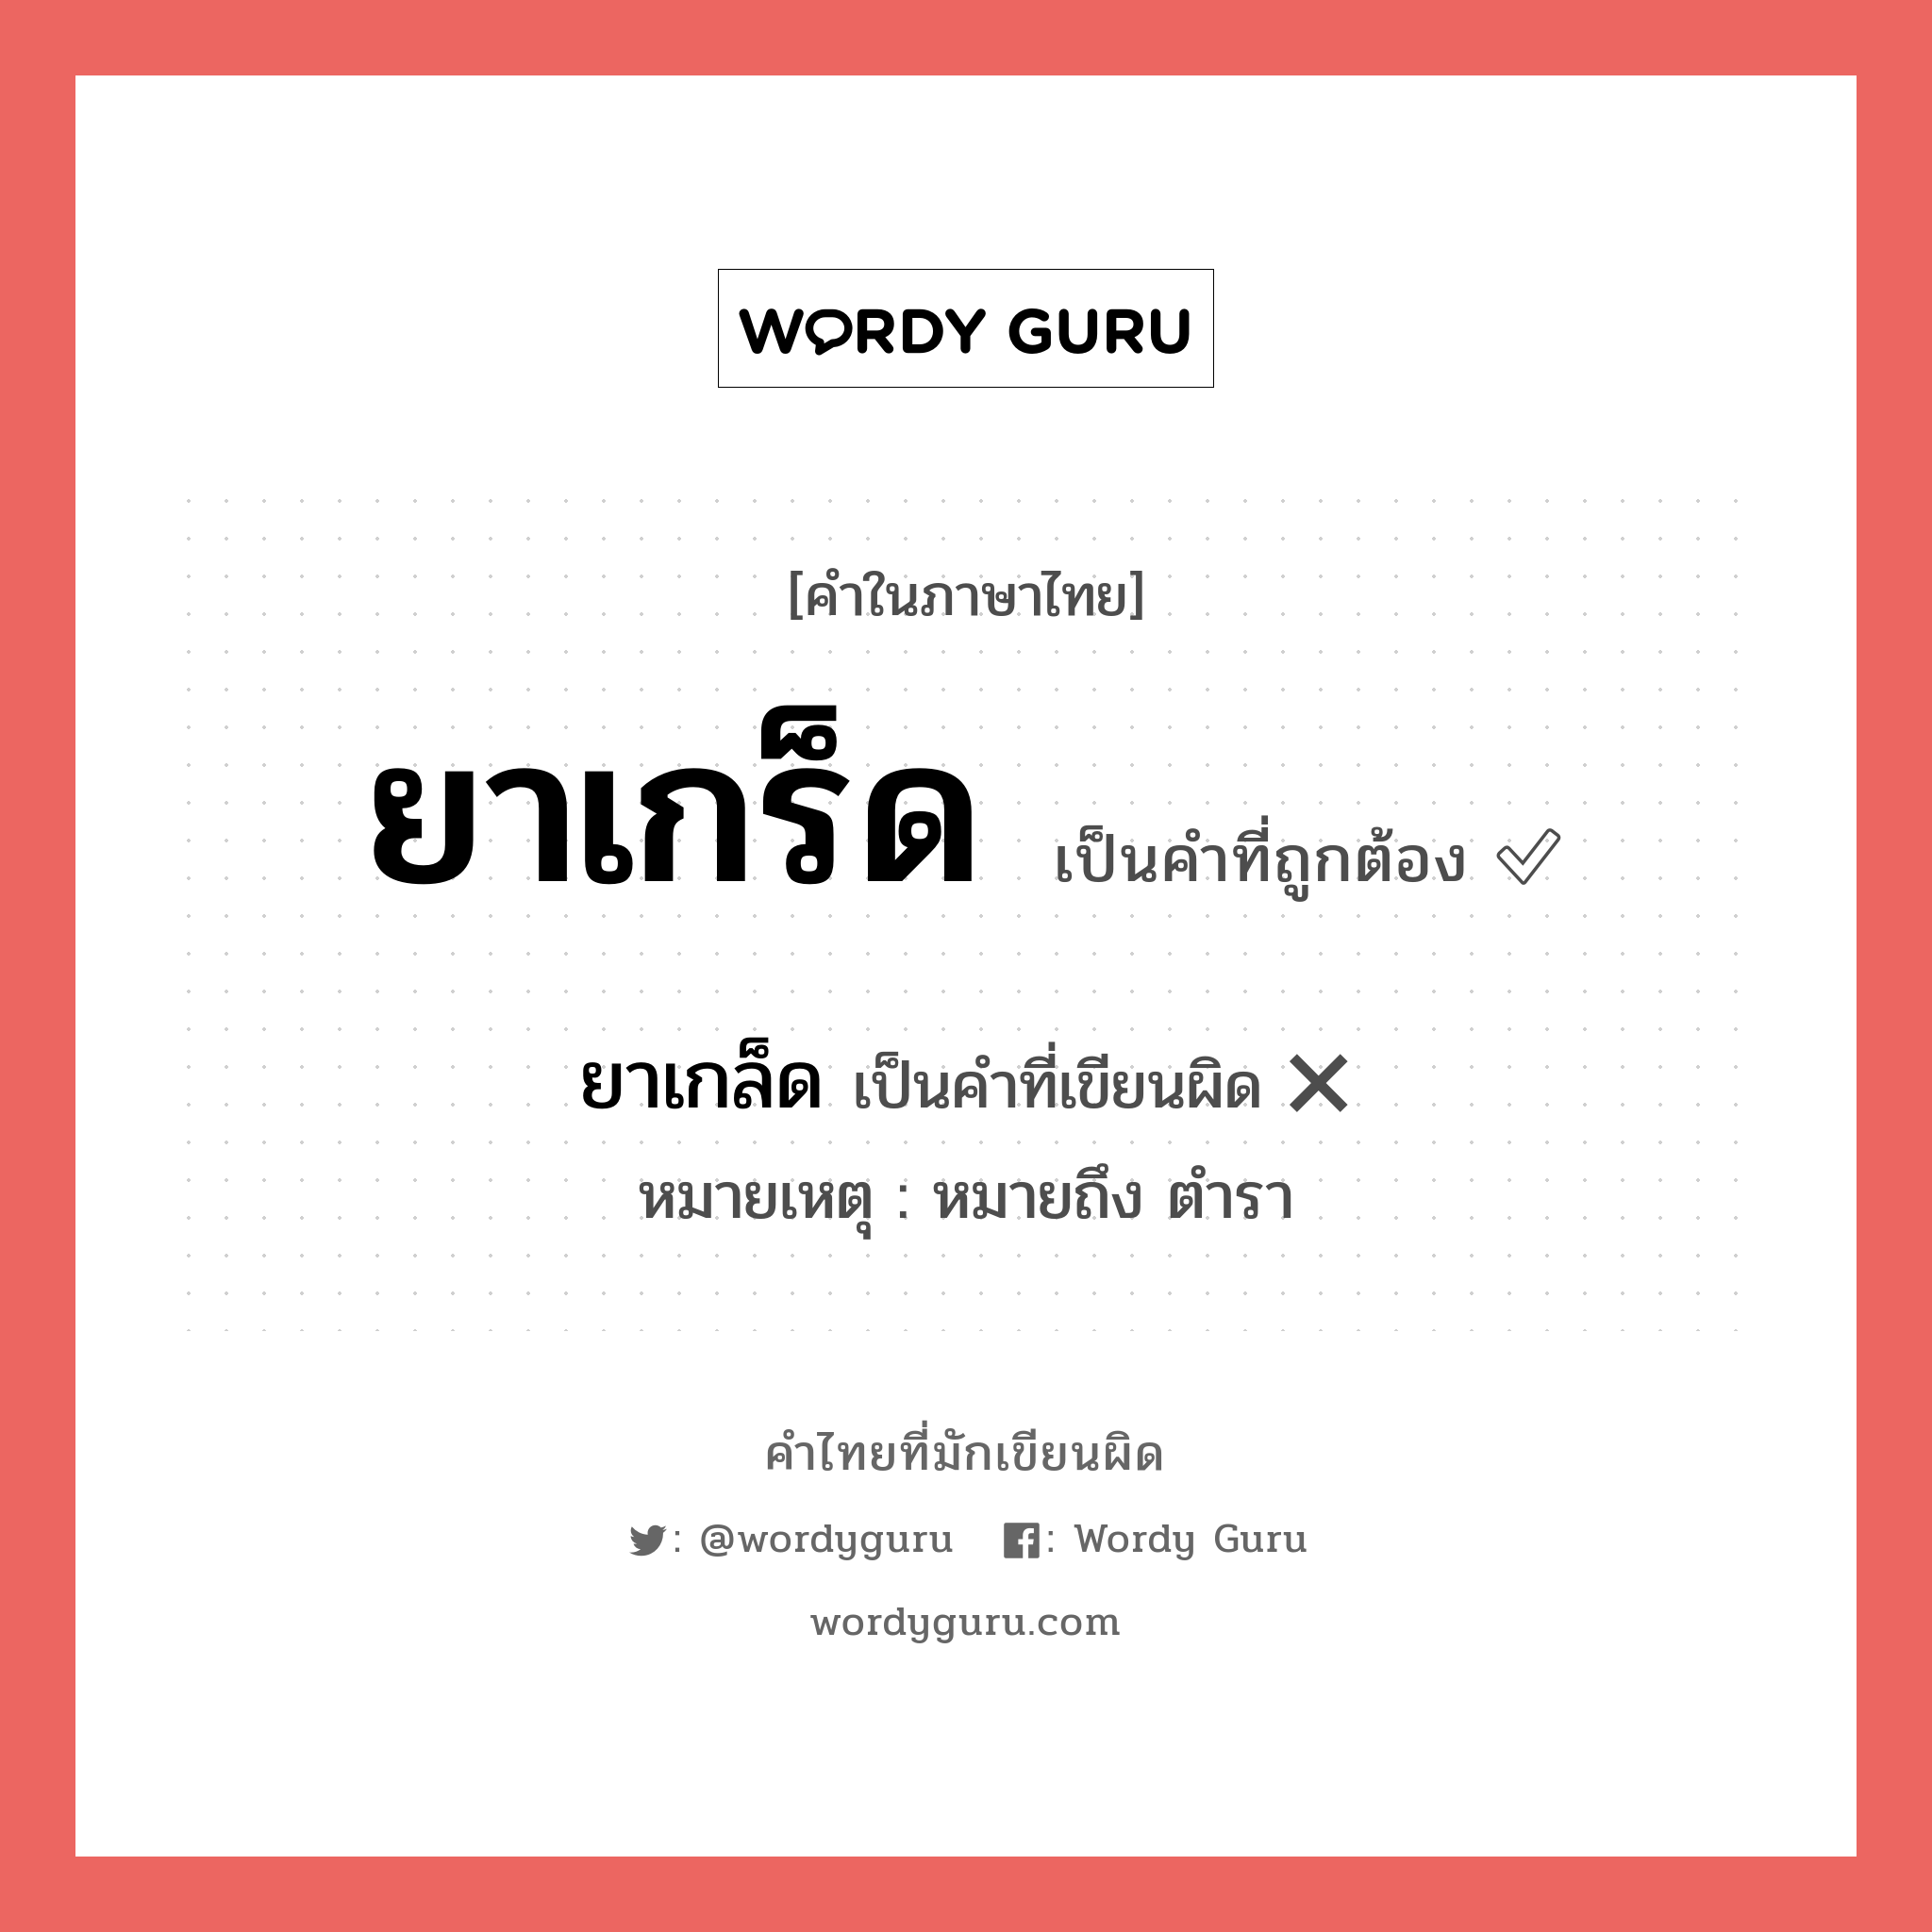 ยาเกล็ด หรือ ยาเกร็ด คำไหนเขียนถูก?, คำในภาษาไทยที่มักเขียนผิด ยาเกล็ด คำที่ผิด ❌ ยาเกร็ด หมายเหตุ หมายถึง ตำรา